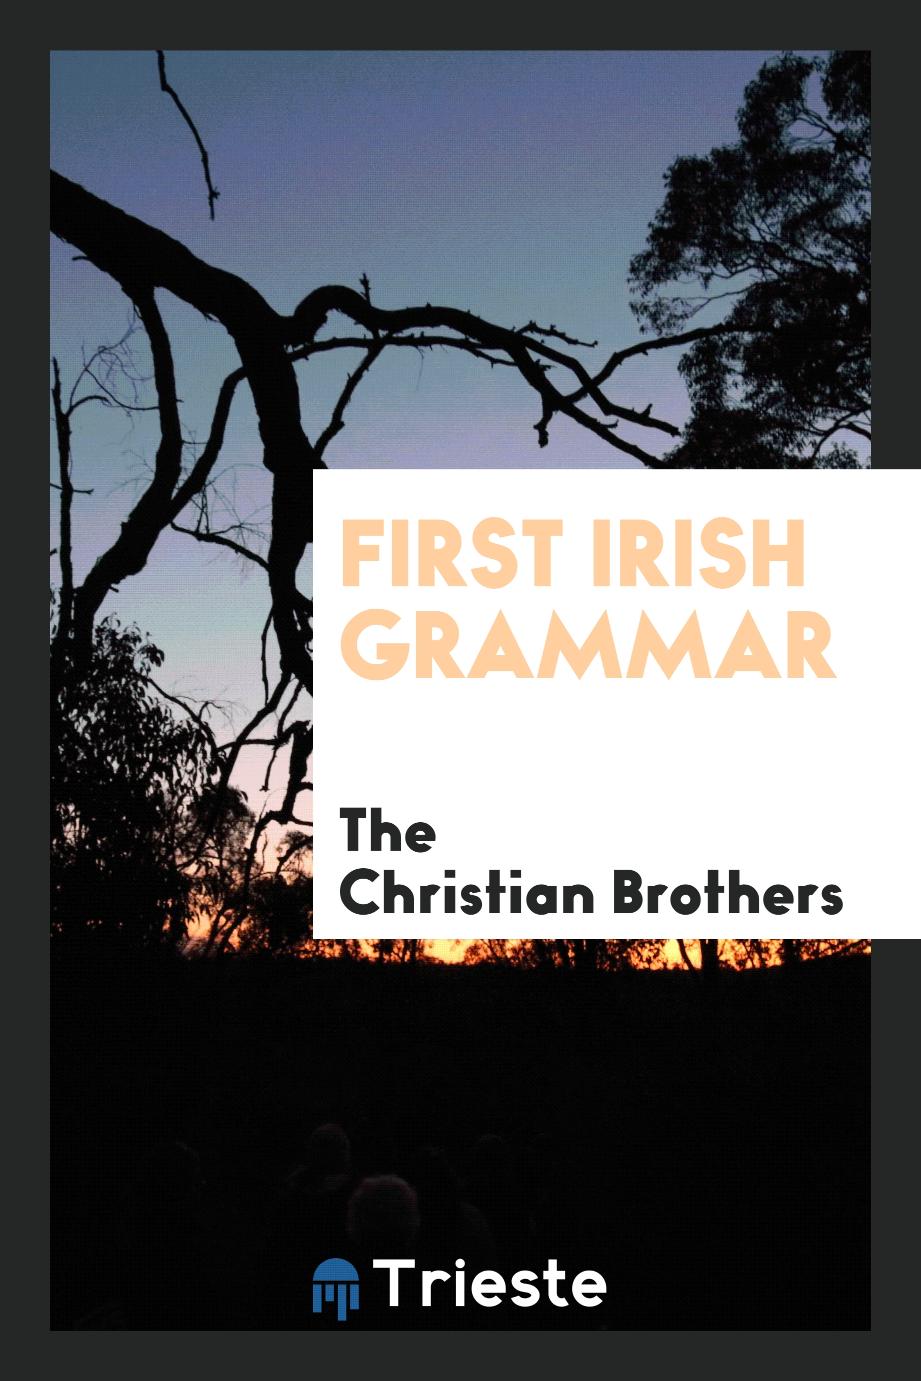 First Irish grammar